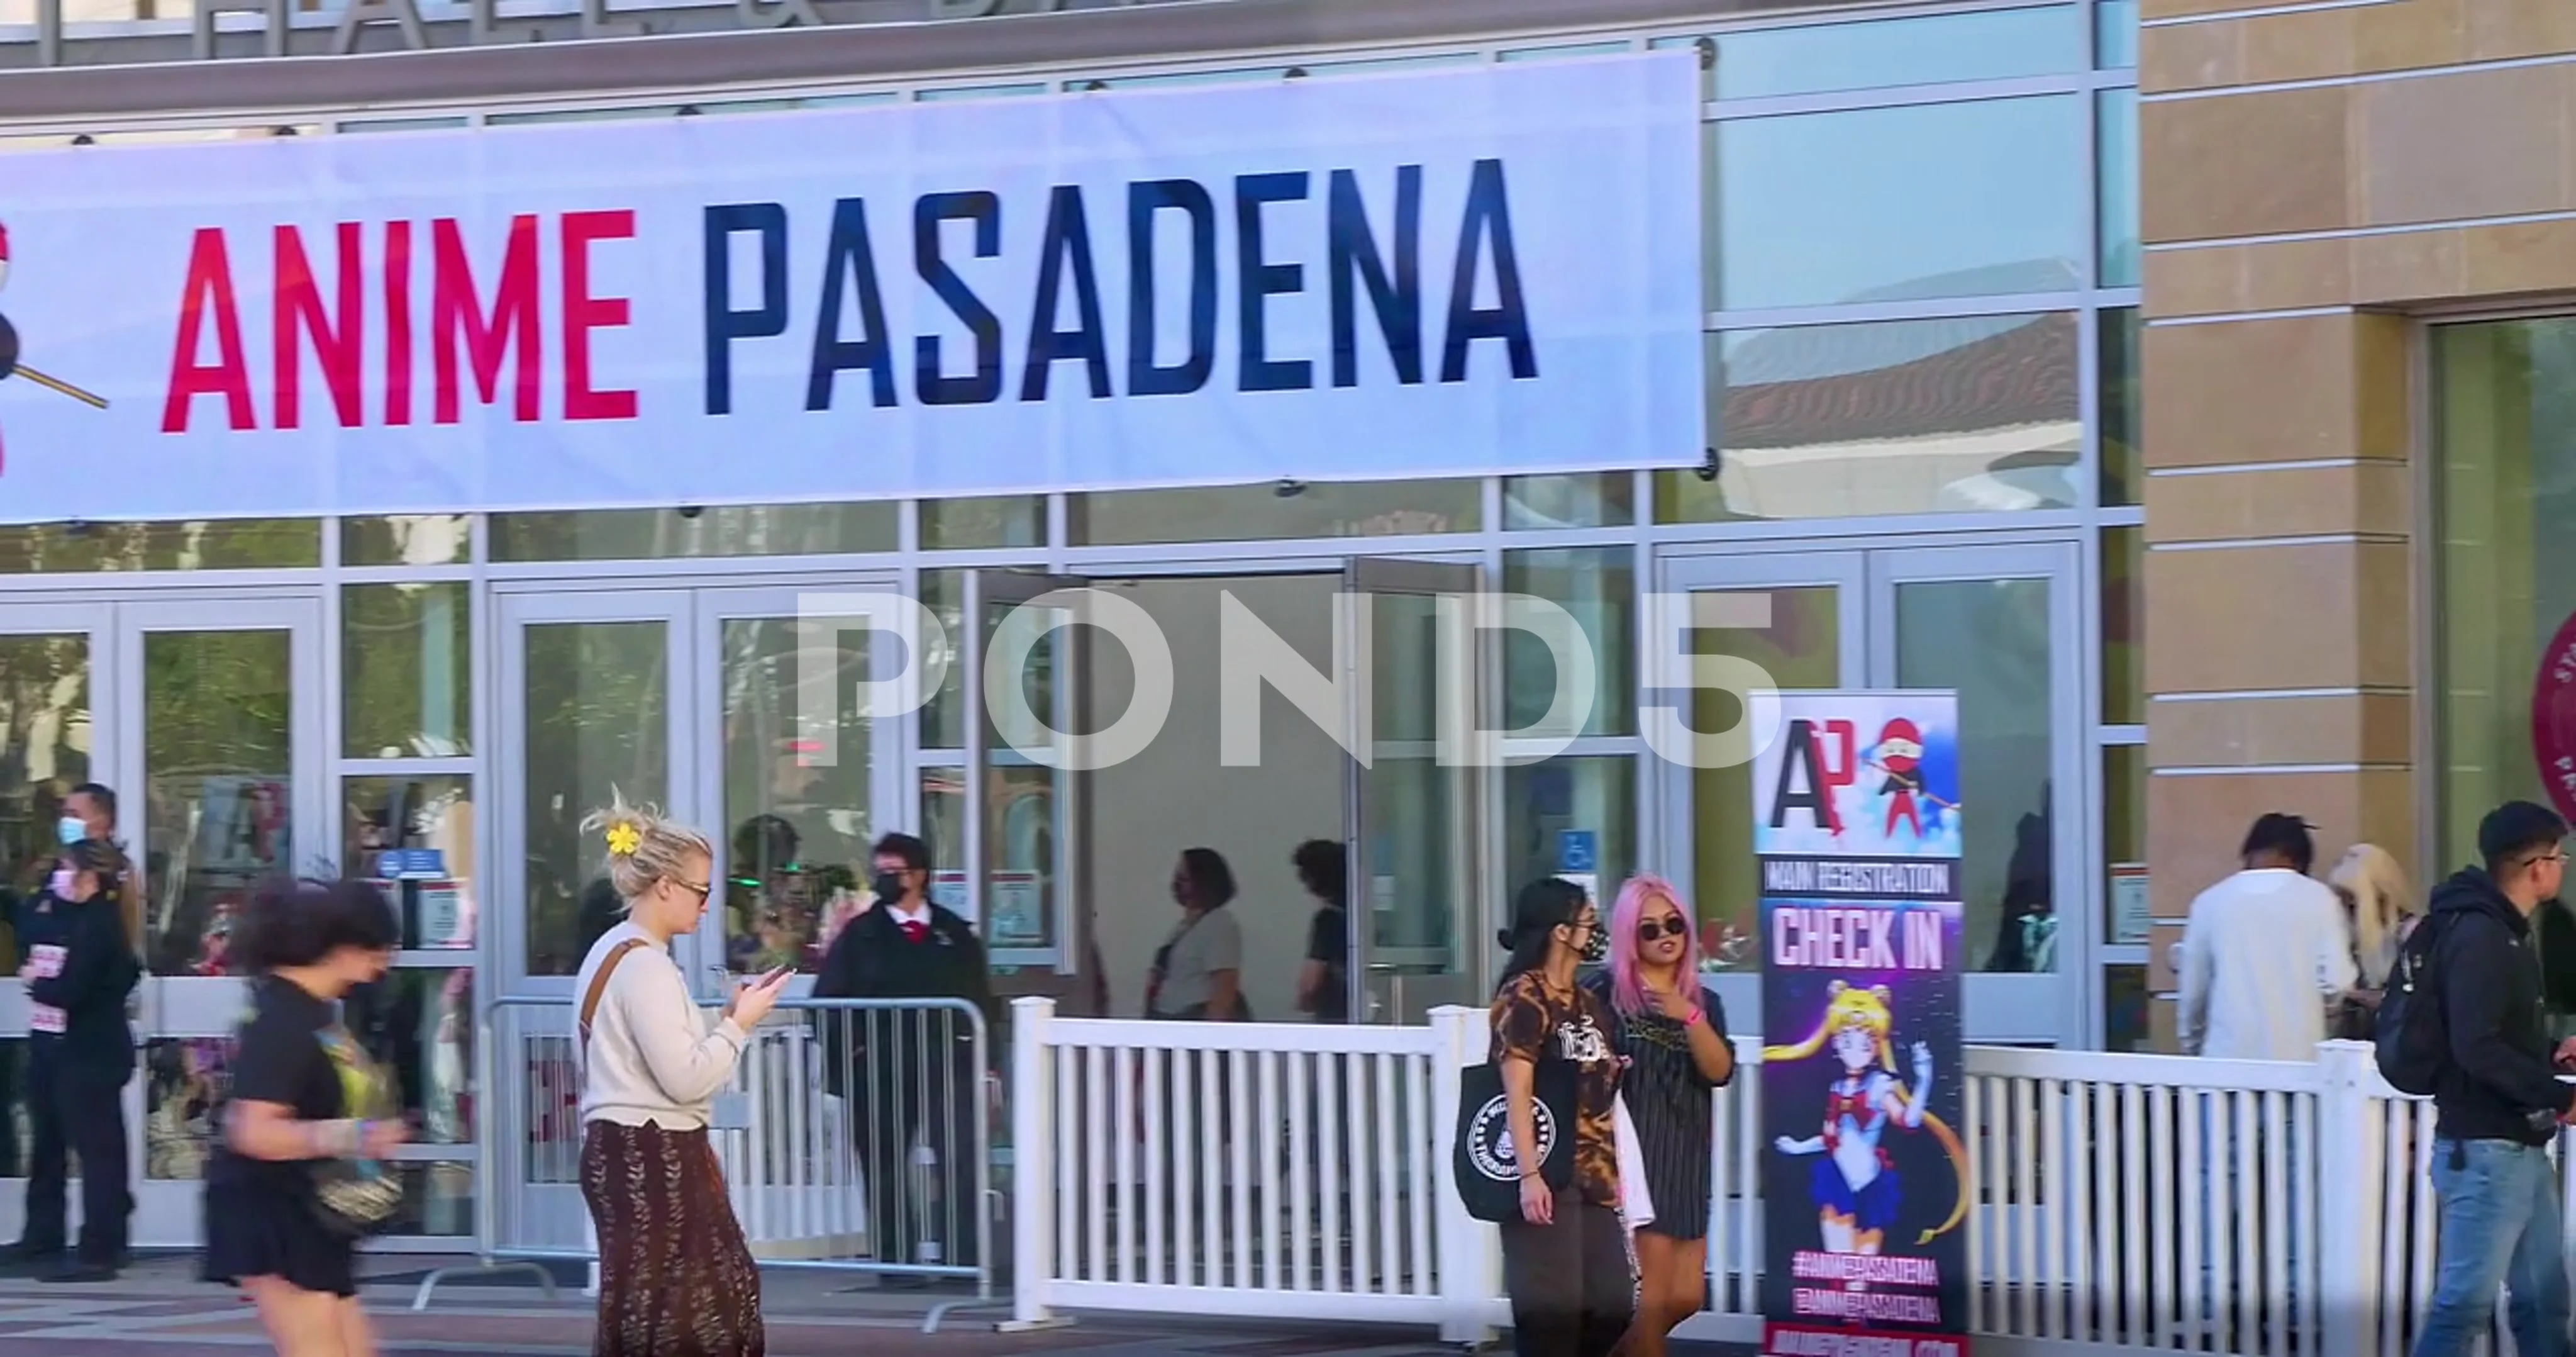 Anime Pasadena 2021 afterparty announced  MP3s  NPCs